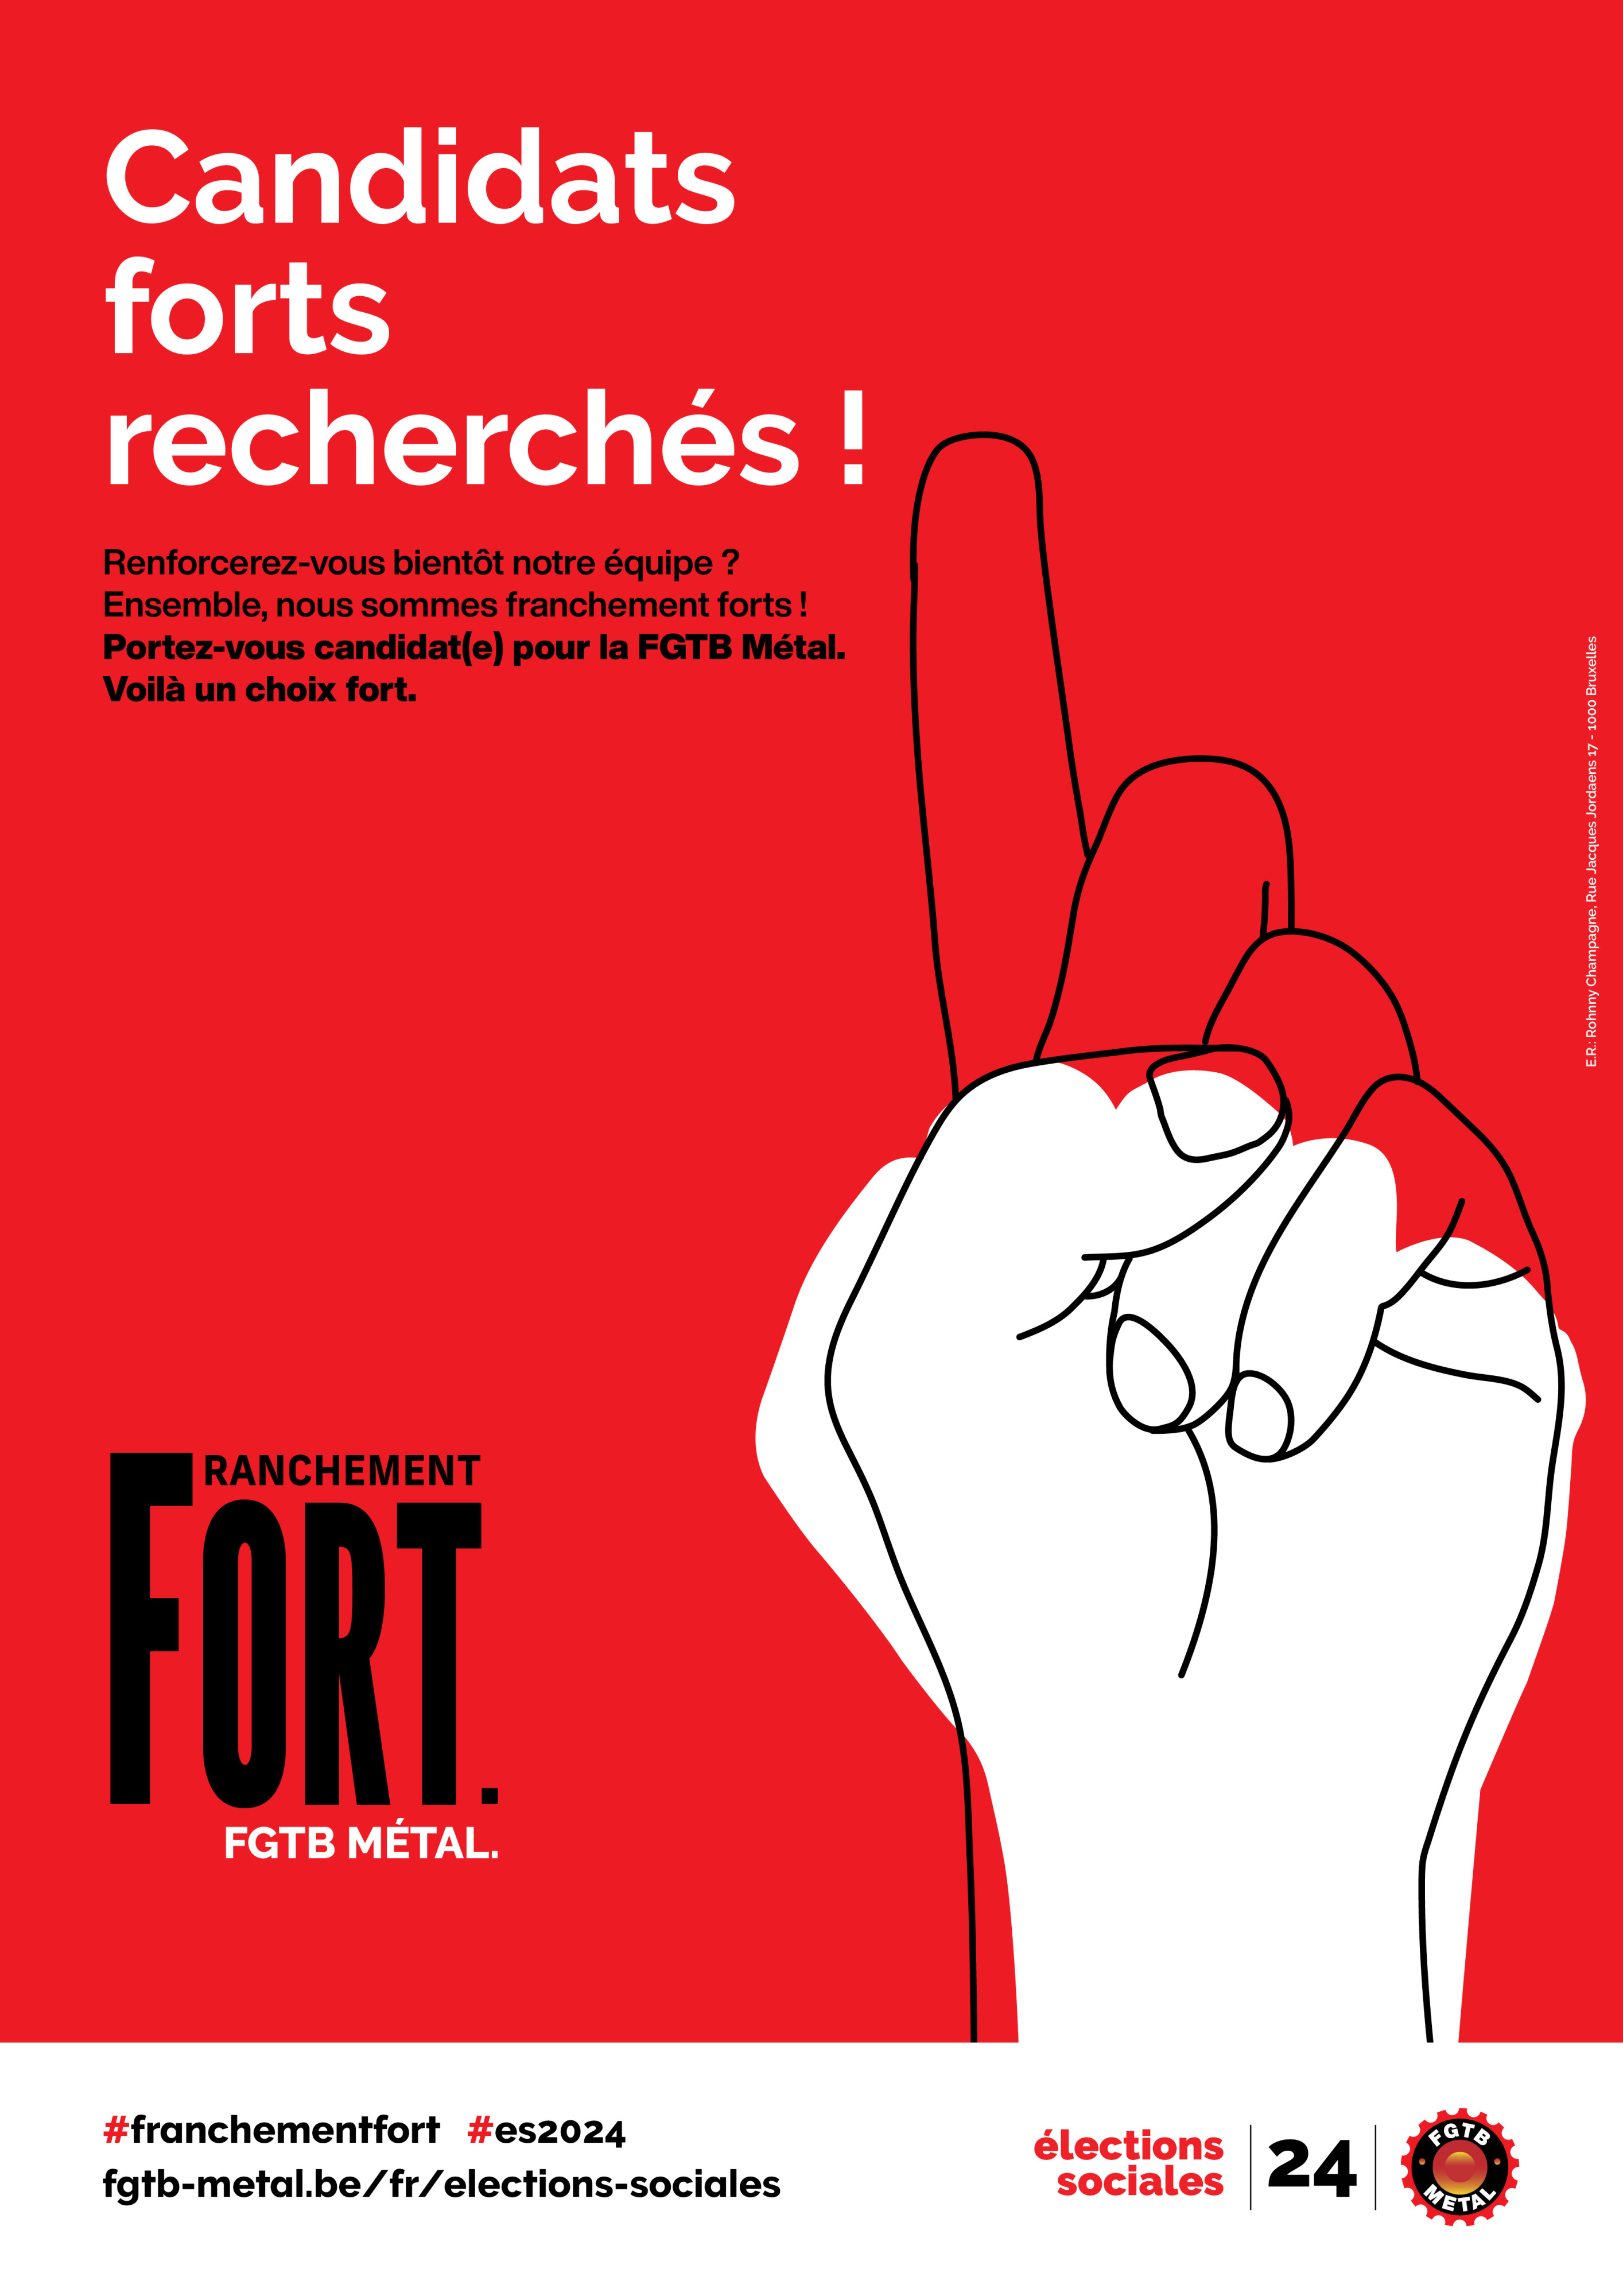 rode affiche voor de zoektocht naar kandidaten voor de SV2024, in het Frans